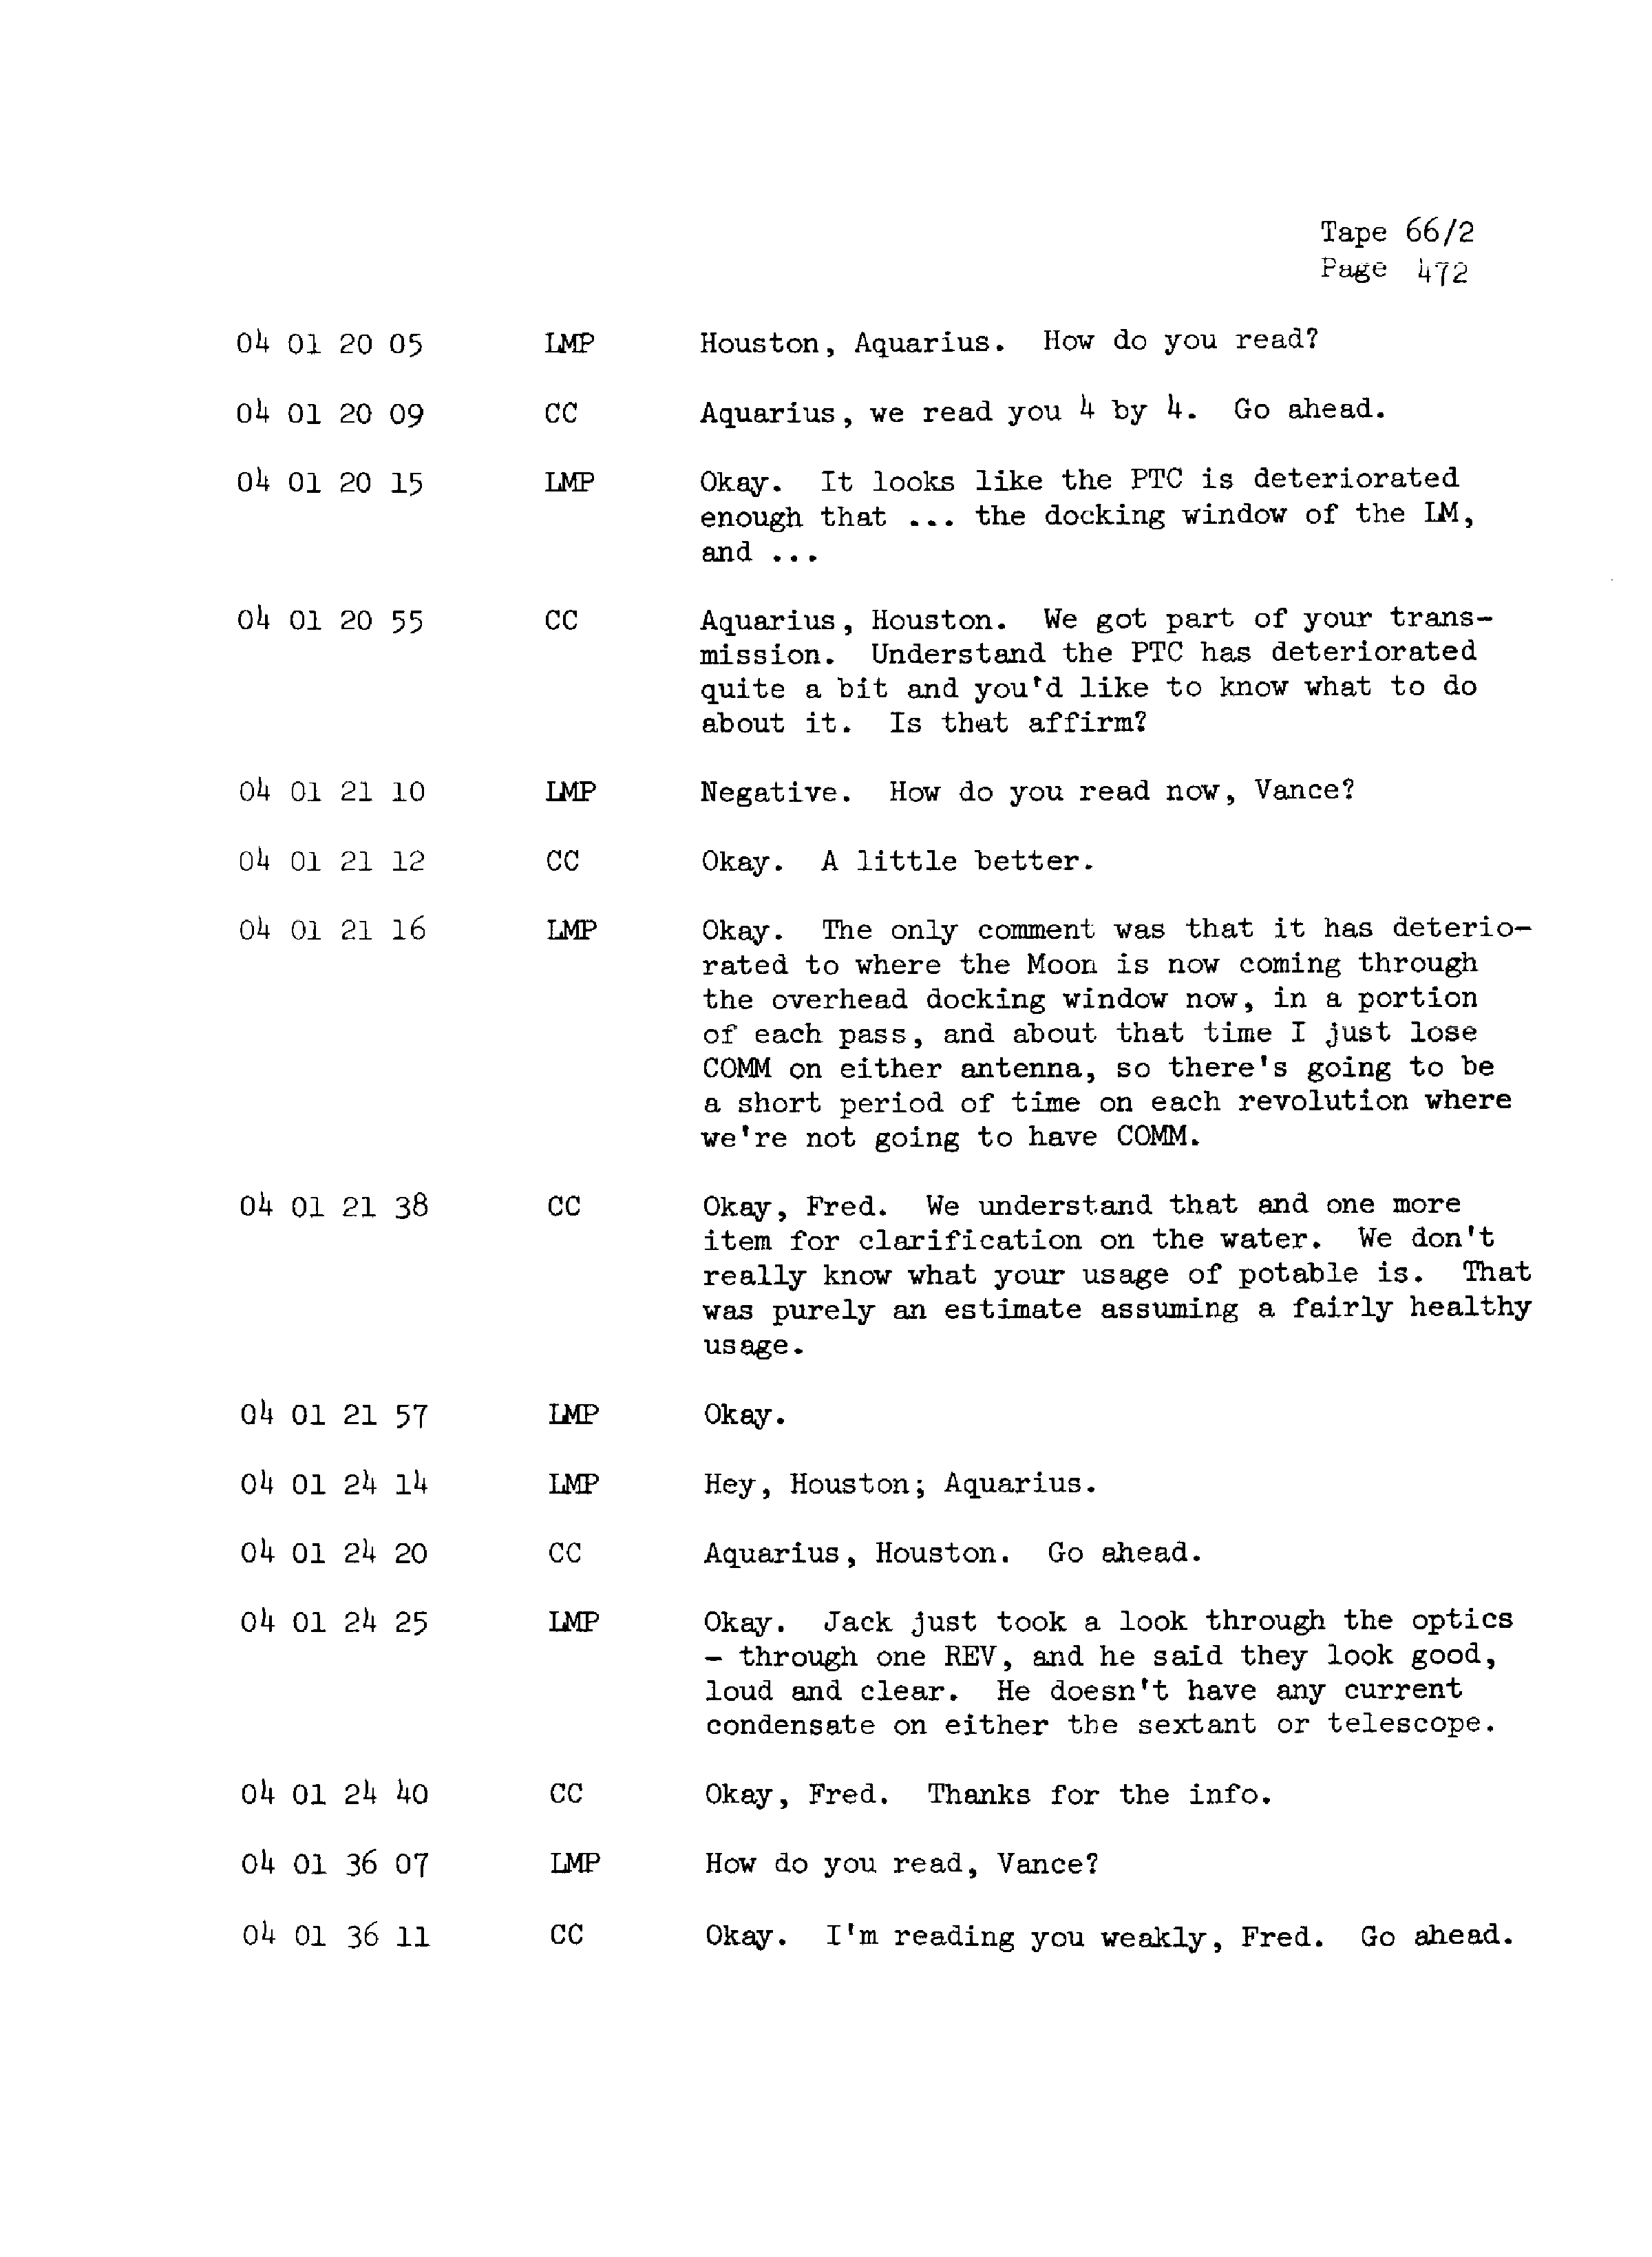 Page 479 of Apollo 13’s original transcript